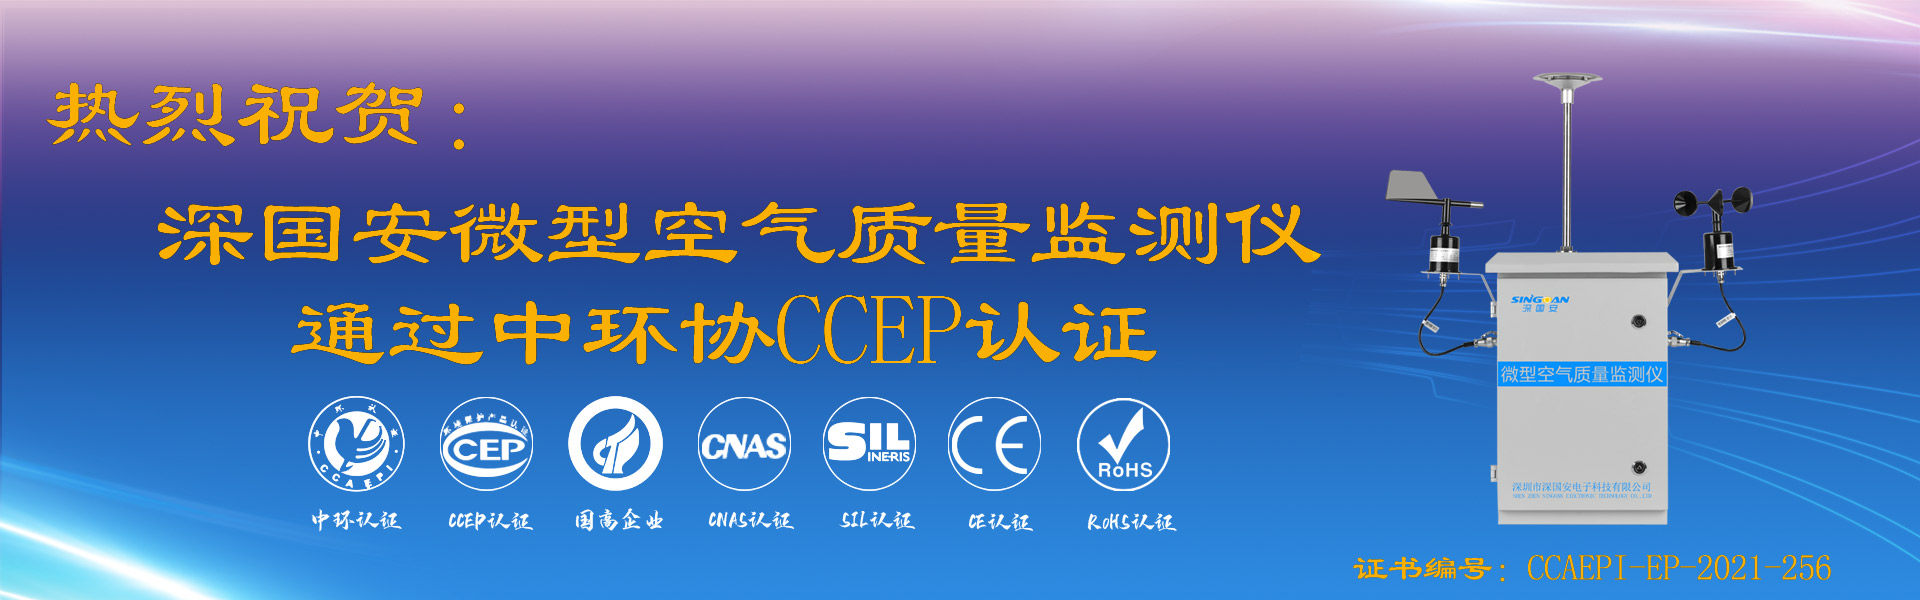 深國安微型空氣質量監測儀通過CCEP認證